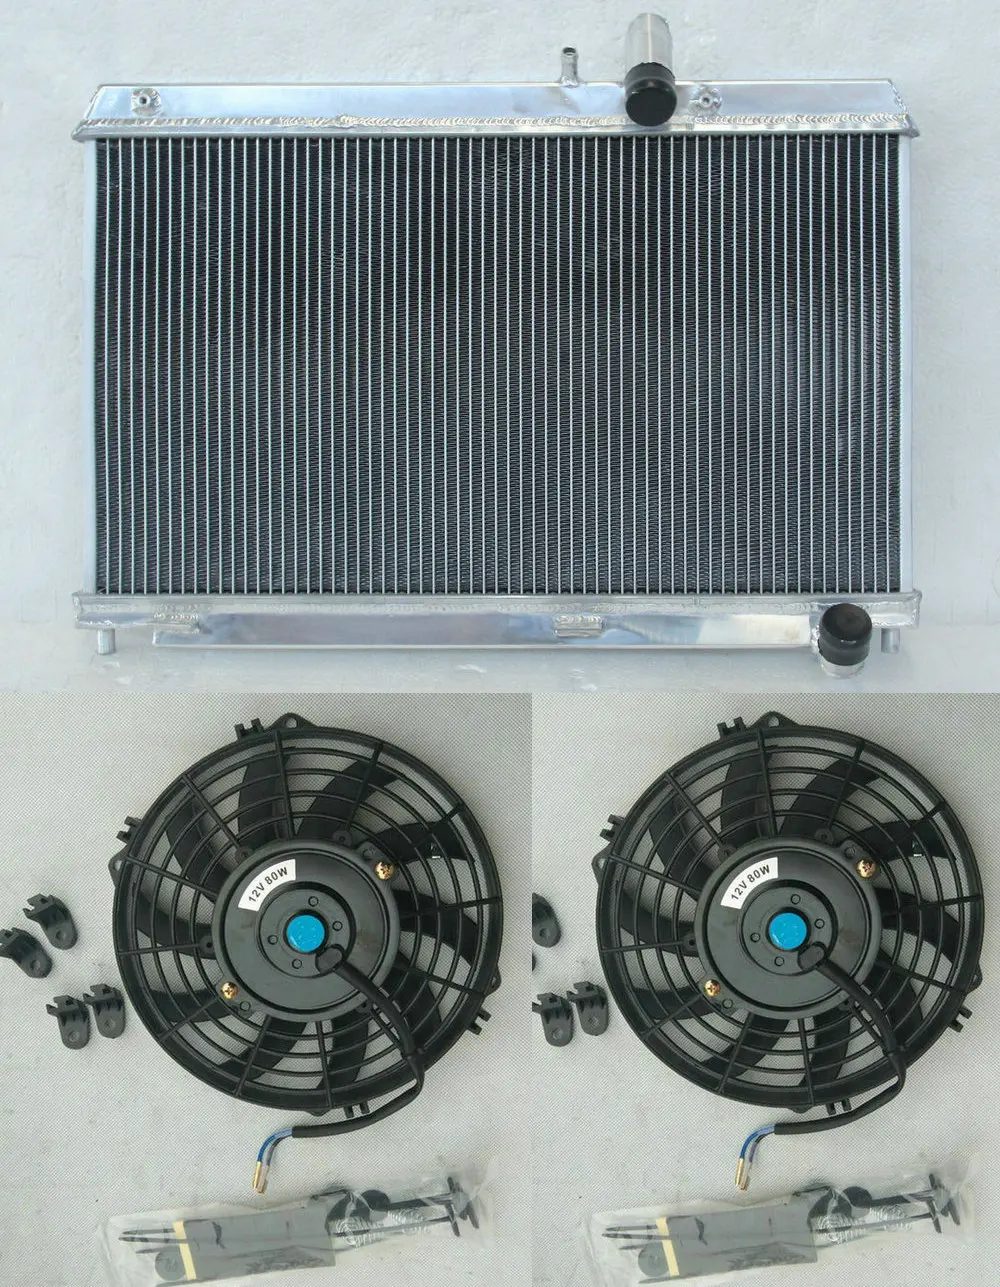 Алюминиевый радиатор для Mazda RX8 RX-8 FE Series 1 13B MSP SE17 Coupe Renesis 4 порта поворотный 1.3л бензин 2003-2008 MT& вентиляторы